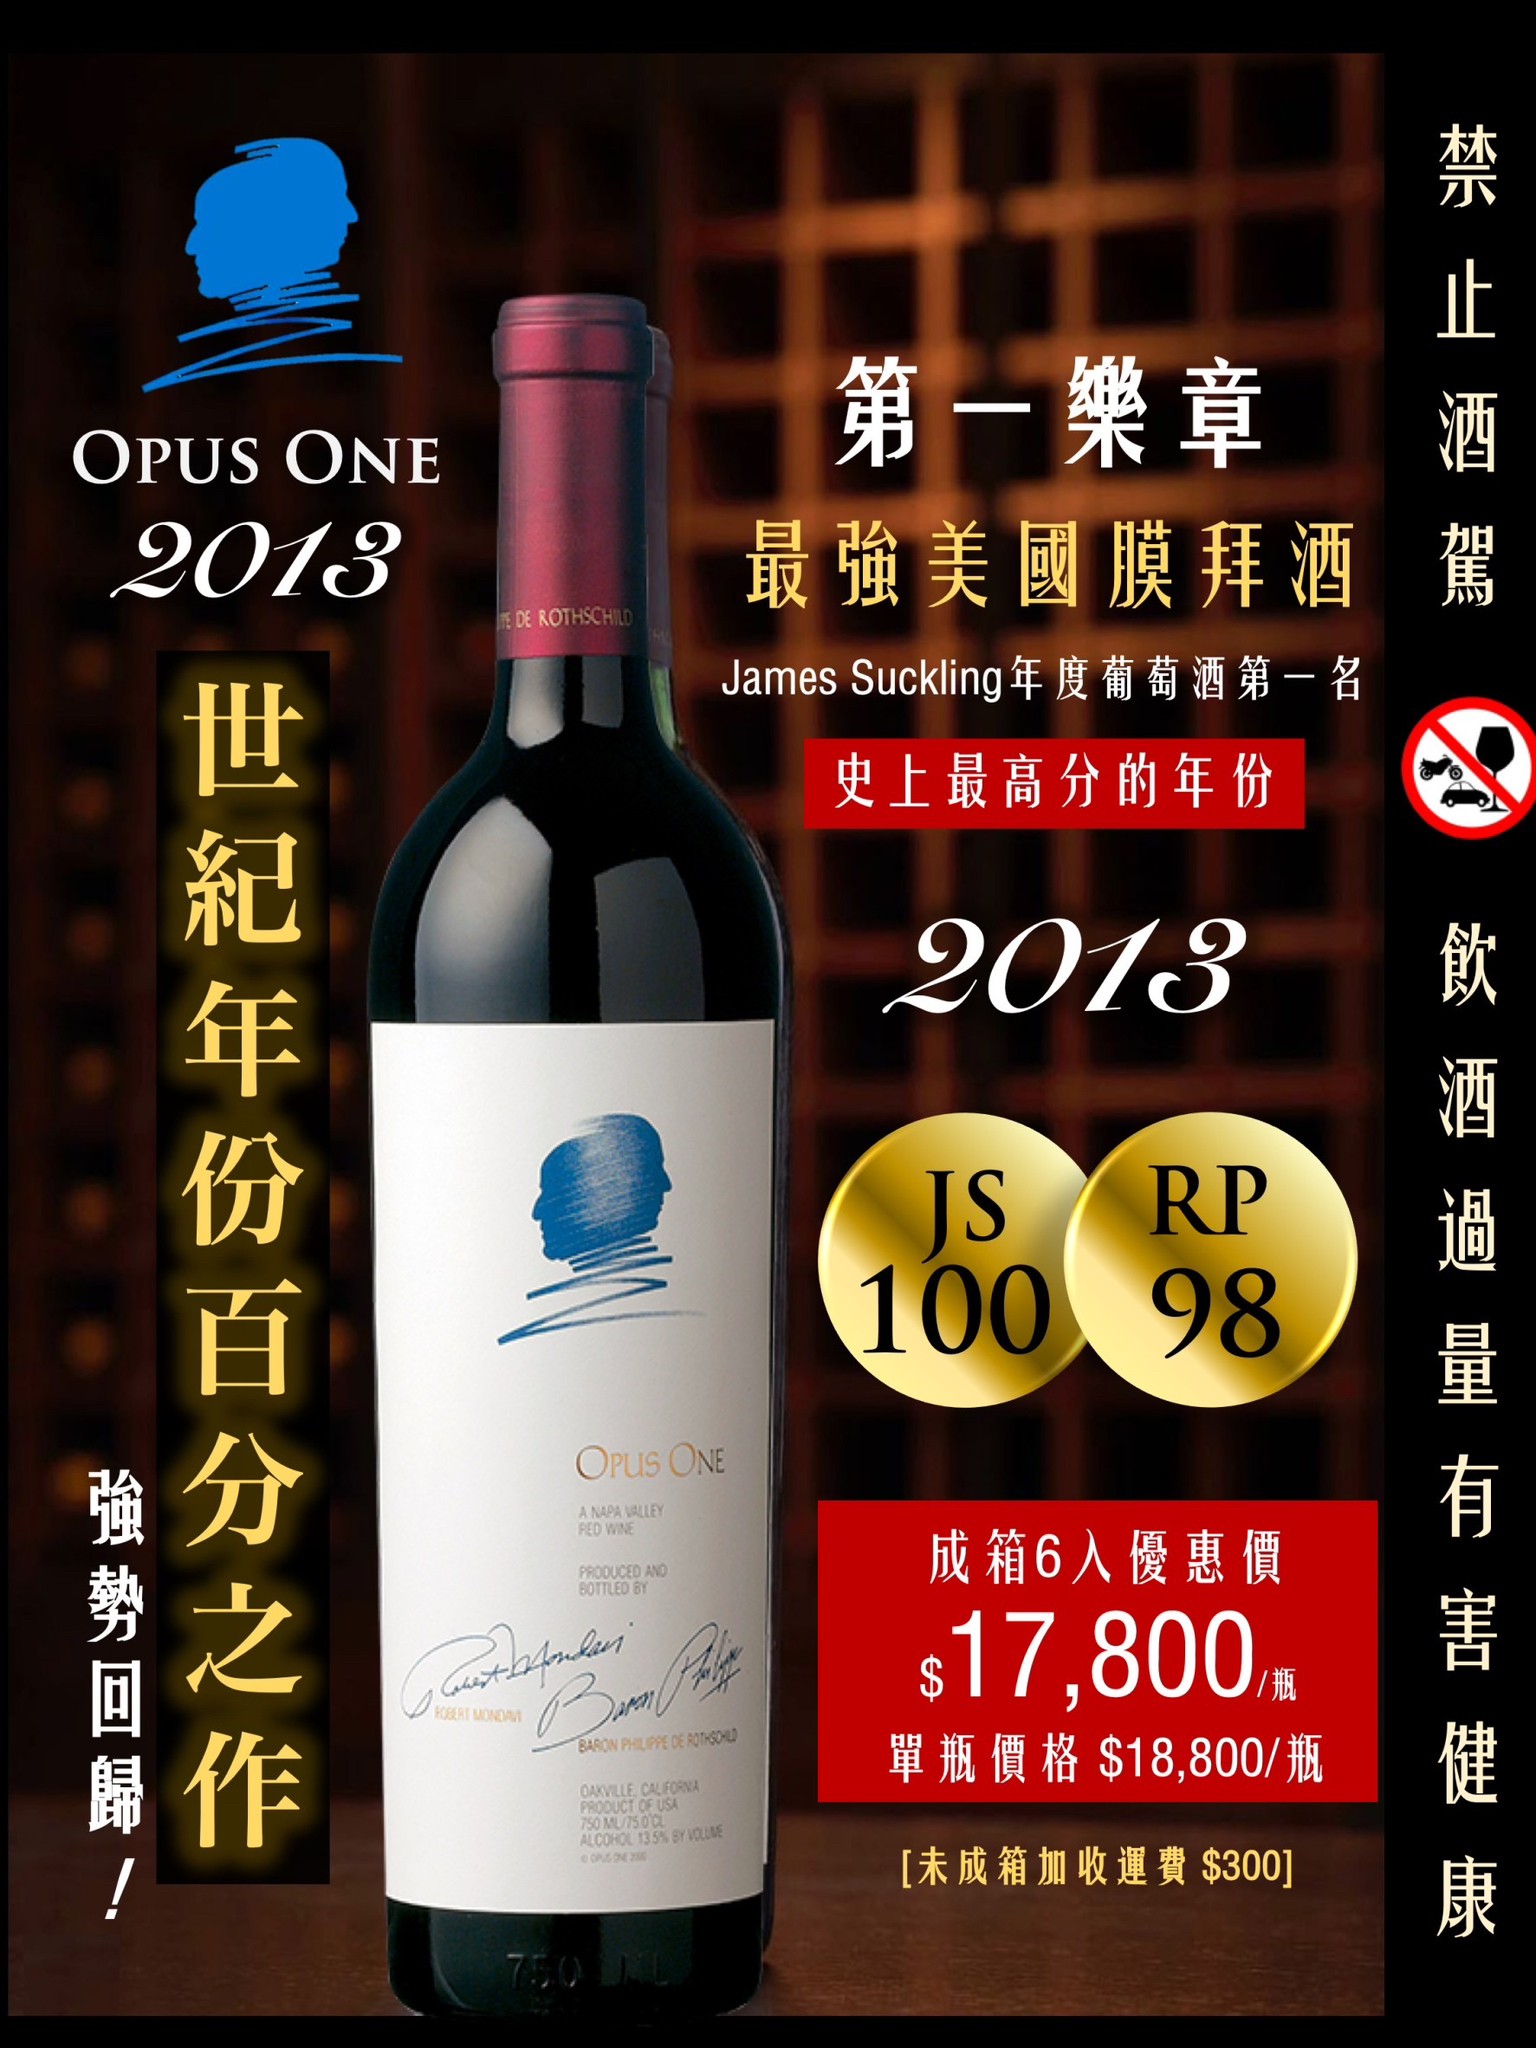 最強美國膜拜酒—【Opus One】 ~MyChumi 汰暄汰暄國際汰暄貿易